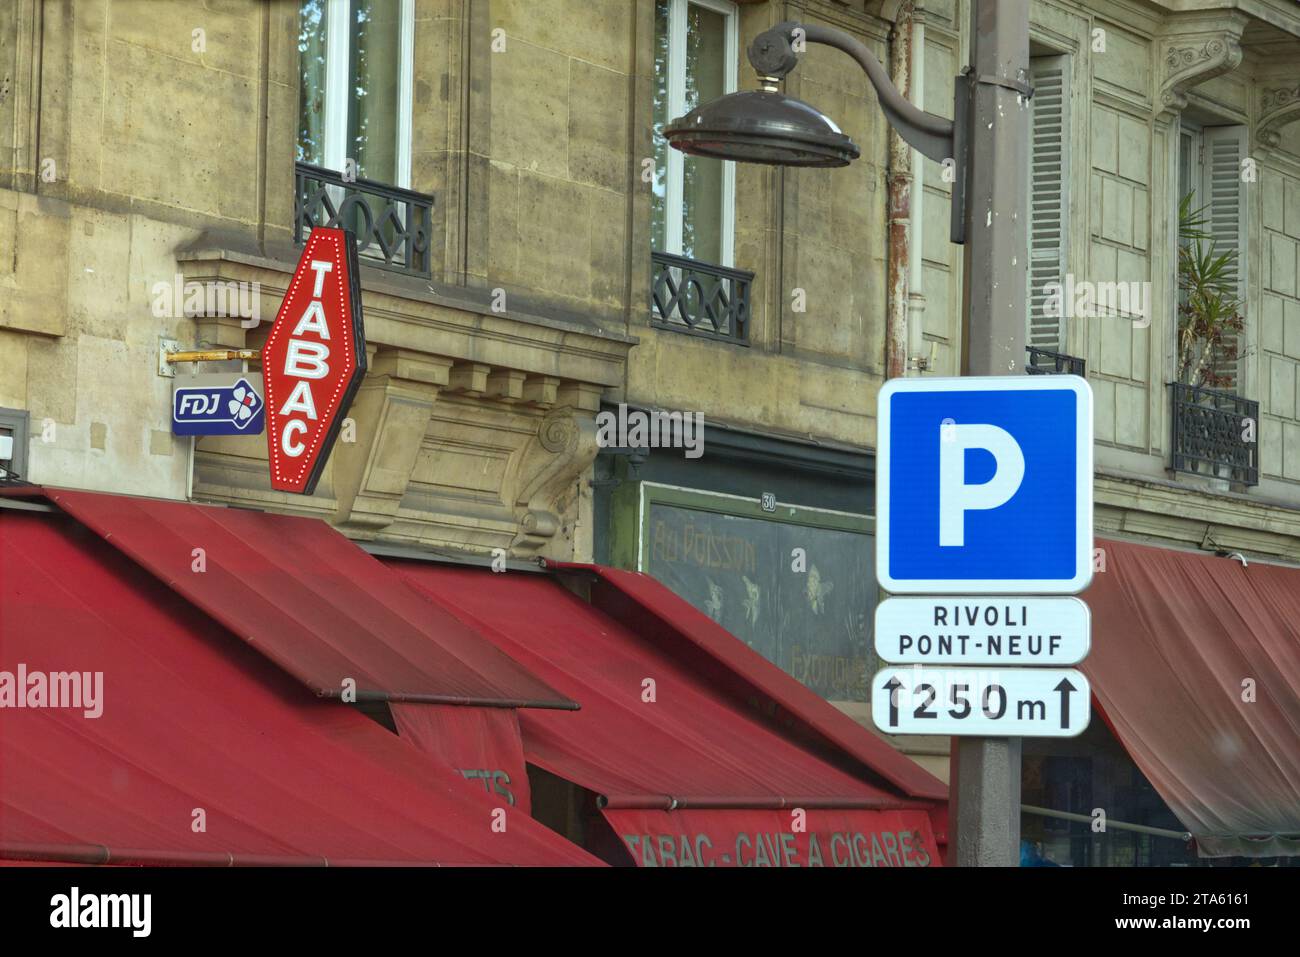 Paris, France - panneau tabac au-dessus des auvents d'un café tabac, un bar qui vend également des cigarettes, des billets de loterie et parfois des timbres Banque D'Images